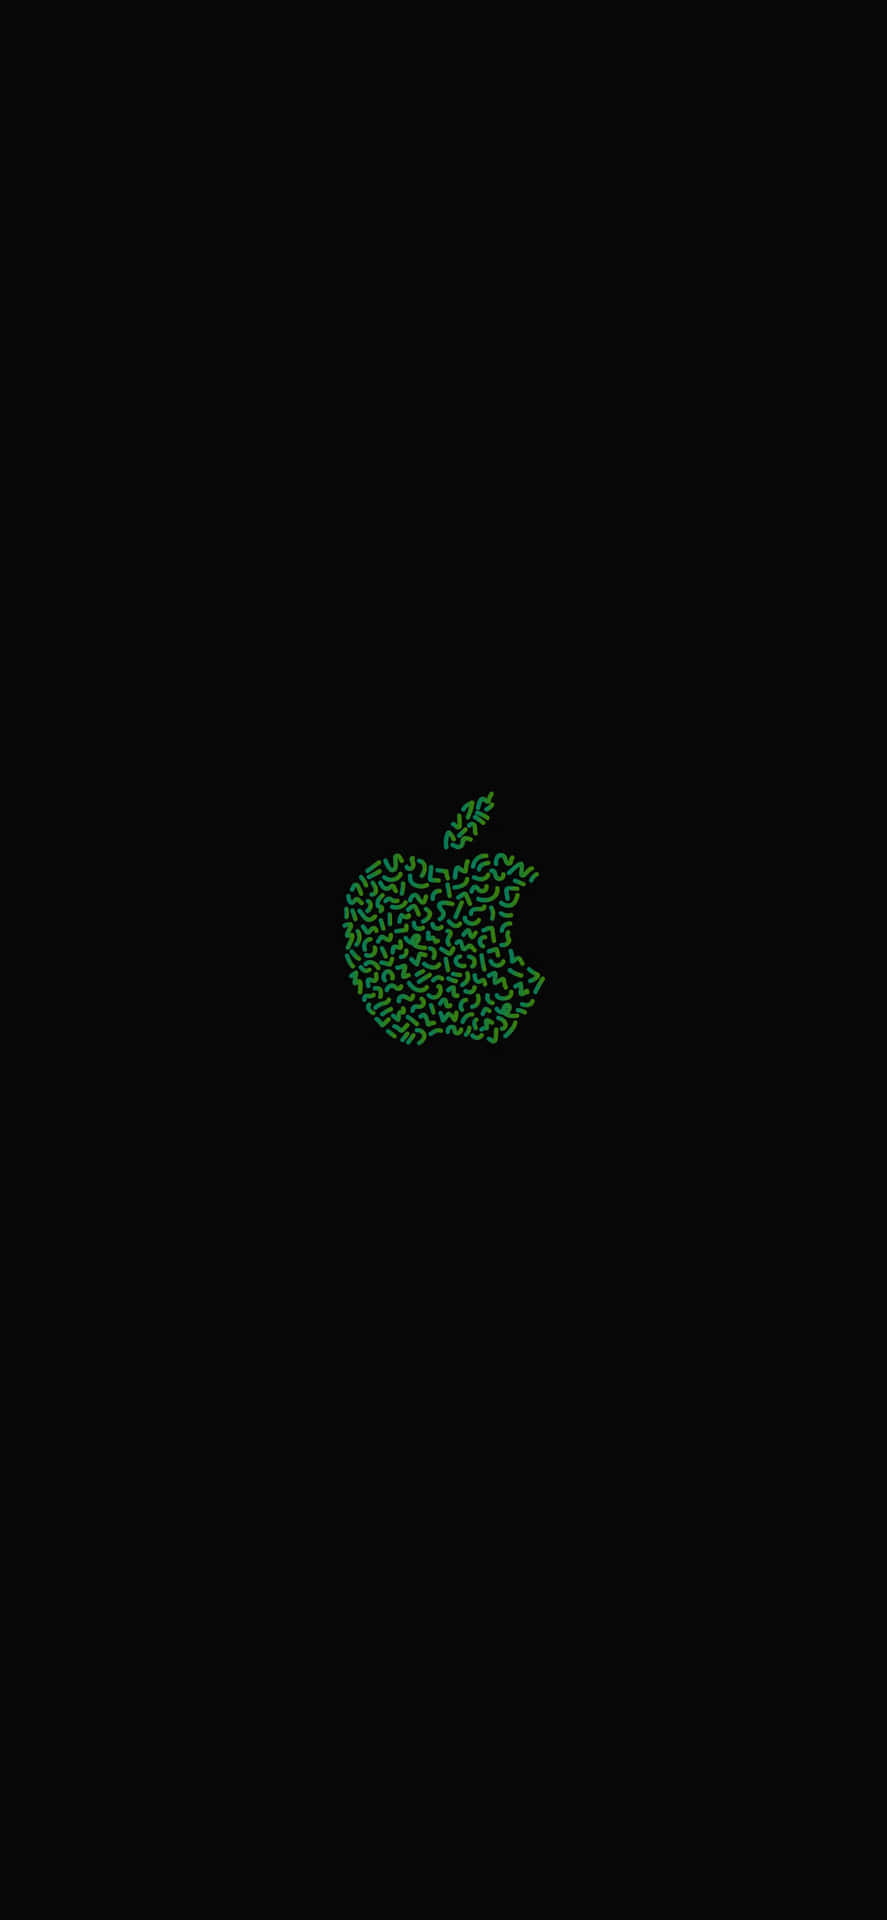 Tjekden Seneste Olivengrønne Apple Iphone. Wallpaper